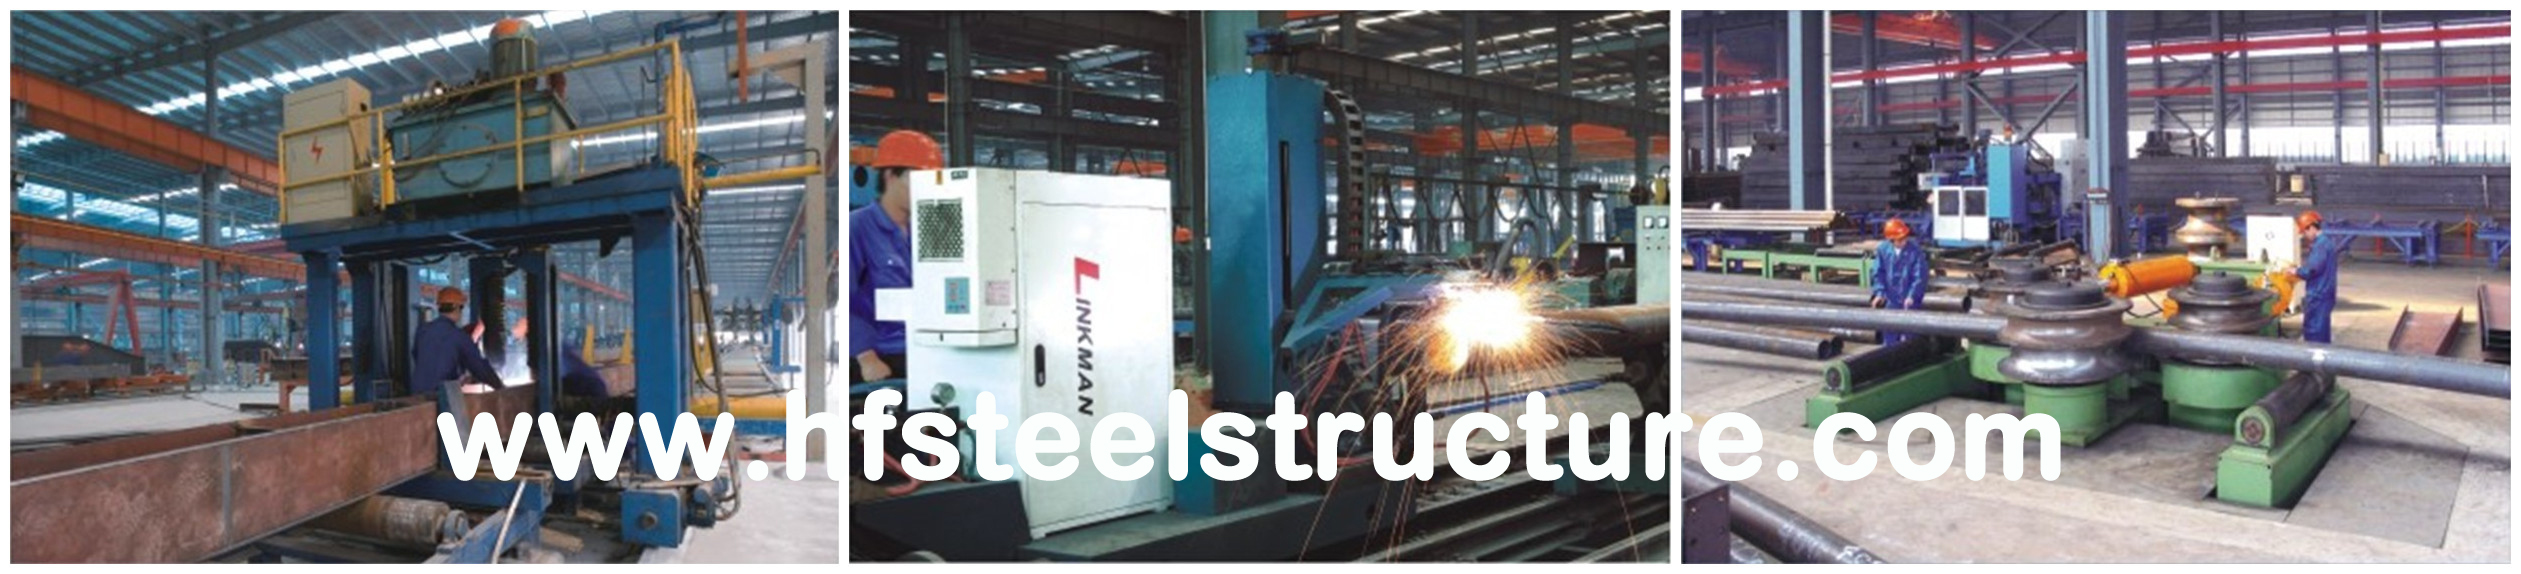 Bespoken Made Metal Warehouse Industrial Steel Buildings ASD/LRFD Standards